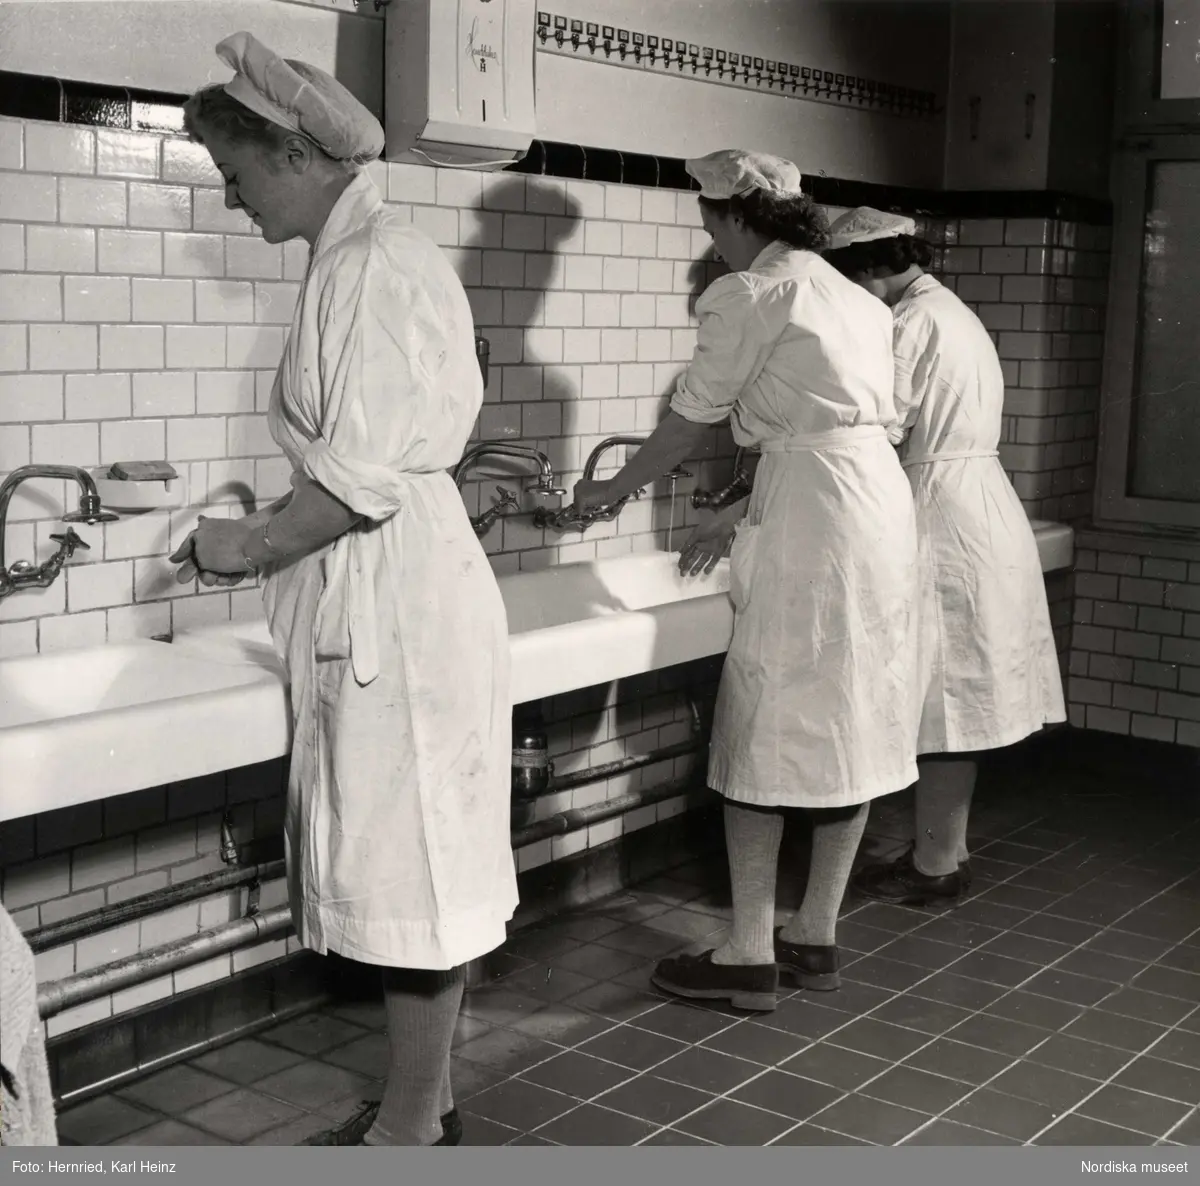 Marabou chokladfabrik, Sundbyberg. Livsmedelsindustri. Kvinnor i arbetskläder tvättar sina händer